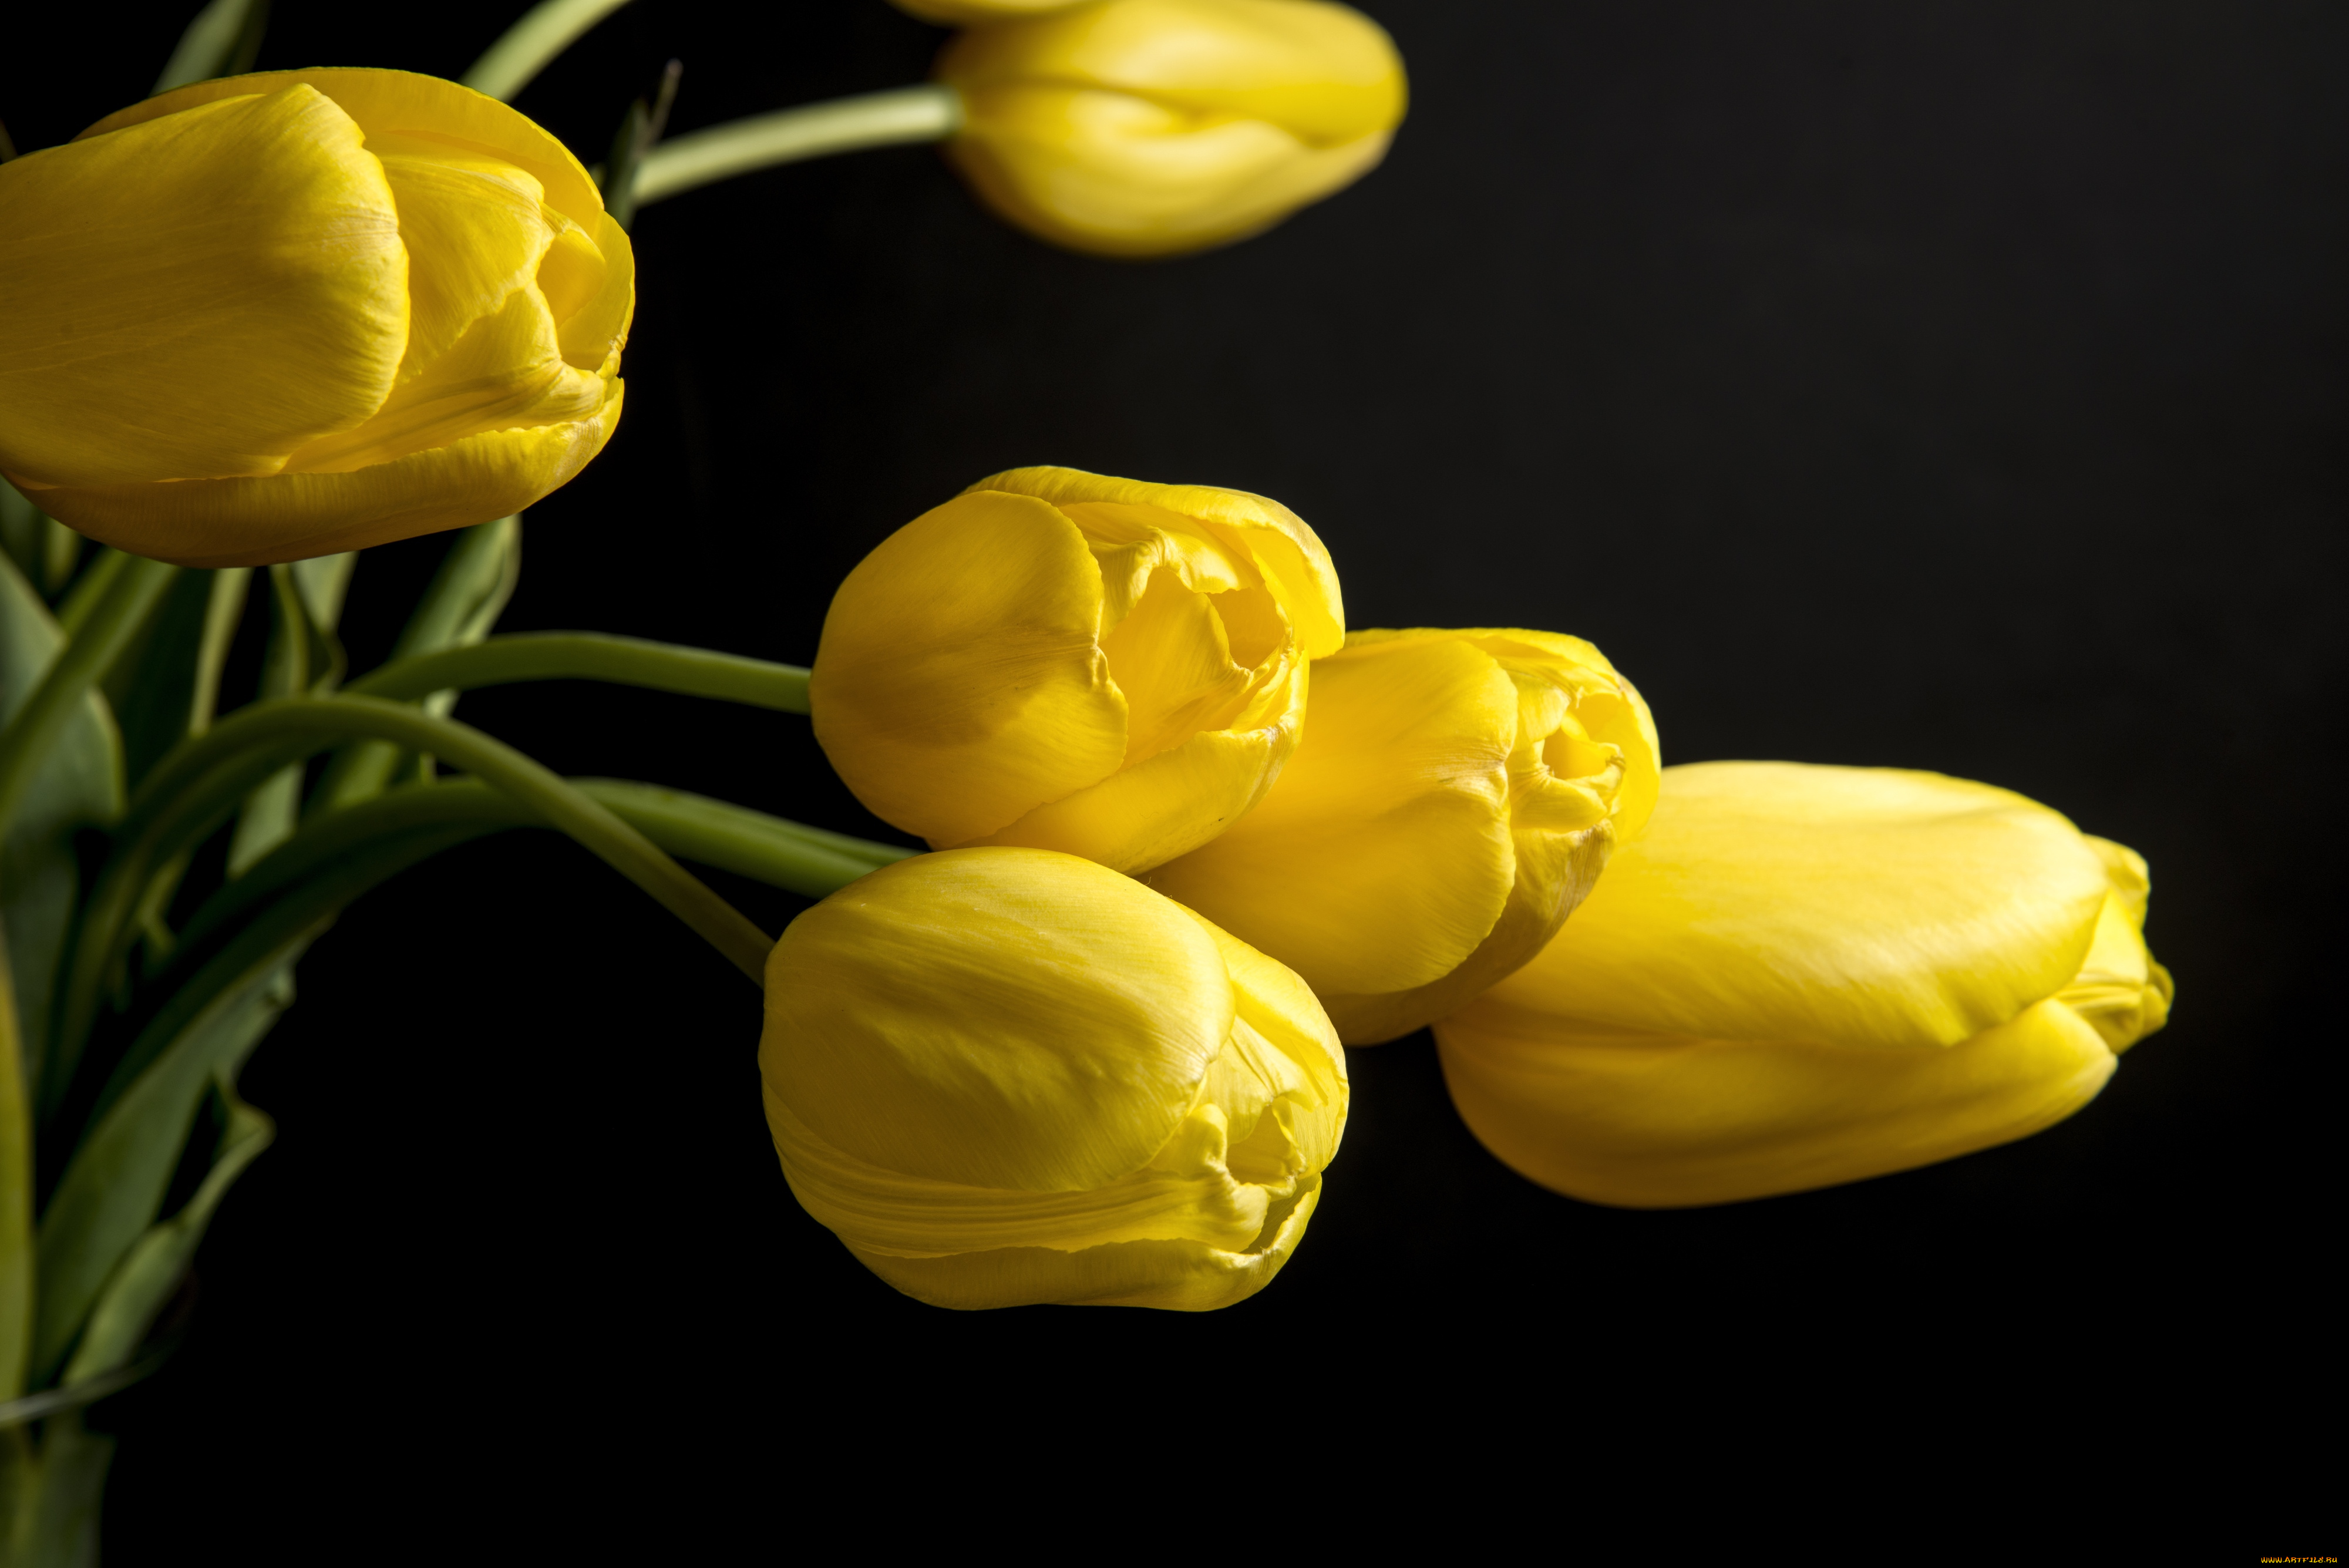 Обои с тюльпанами на телефон. Тюльпан Йеллоу Кинг. Тюльпан Миллер тайм. Желтые тюльпаны. Жёлтый цветок.